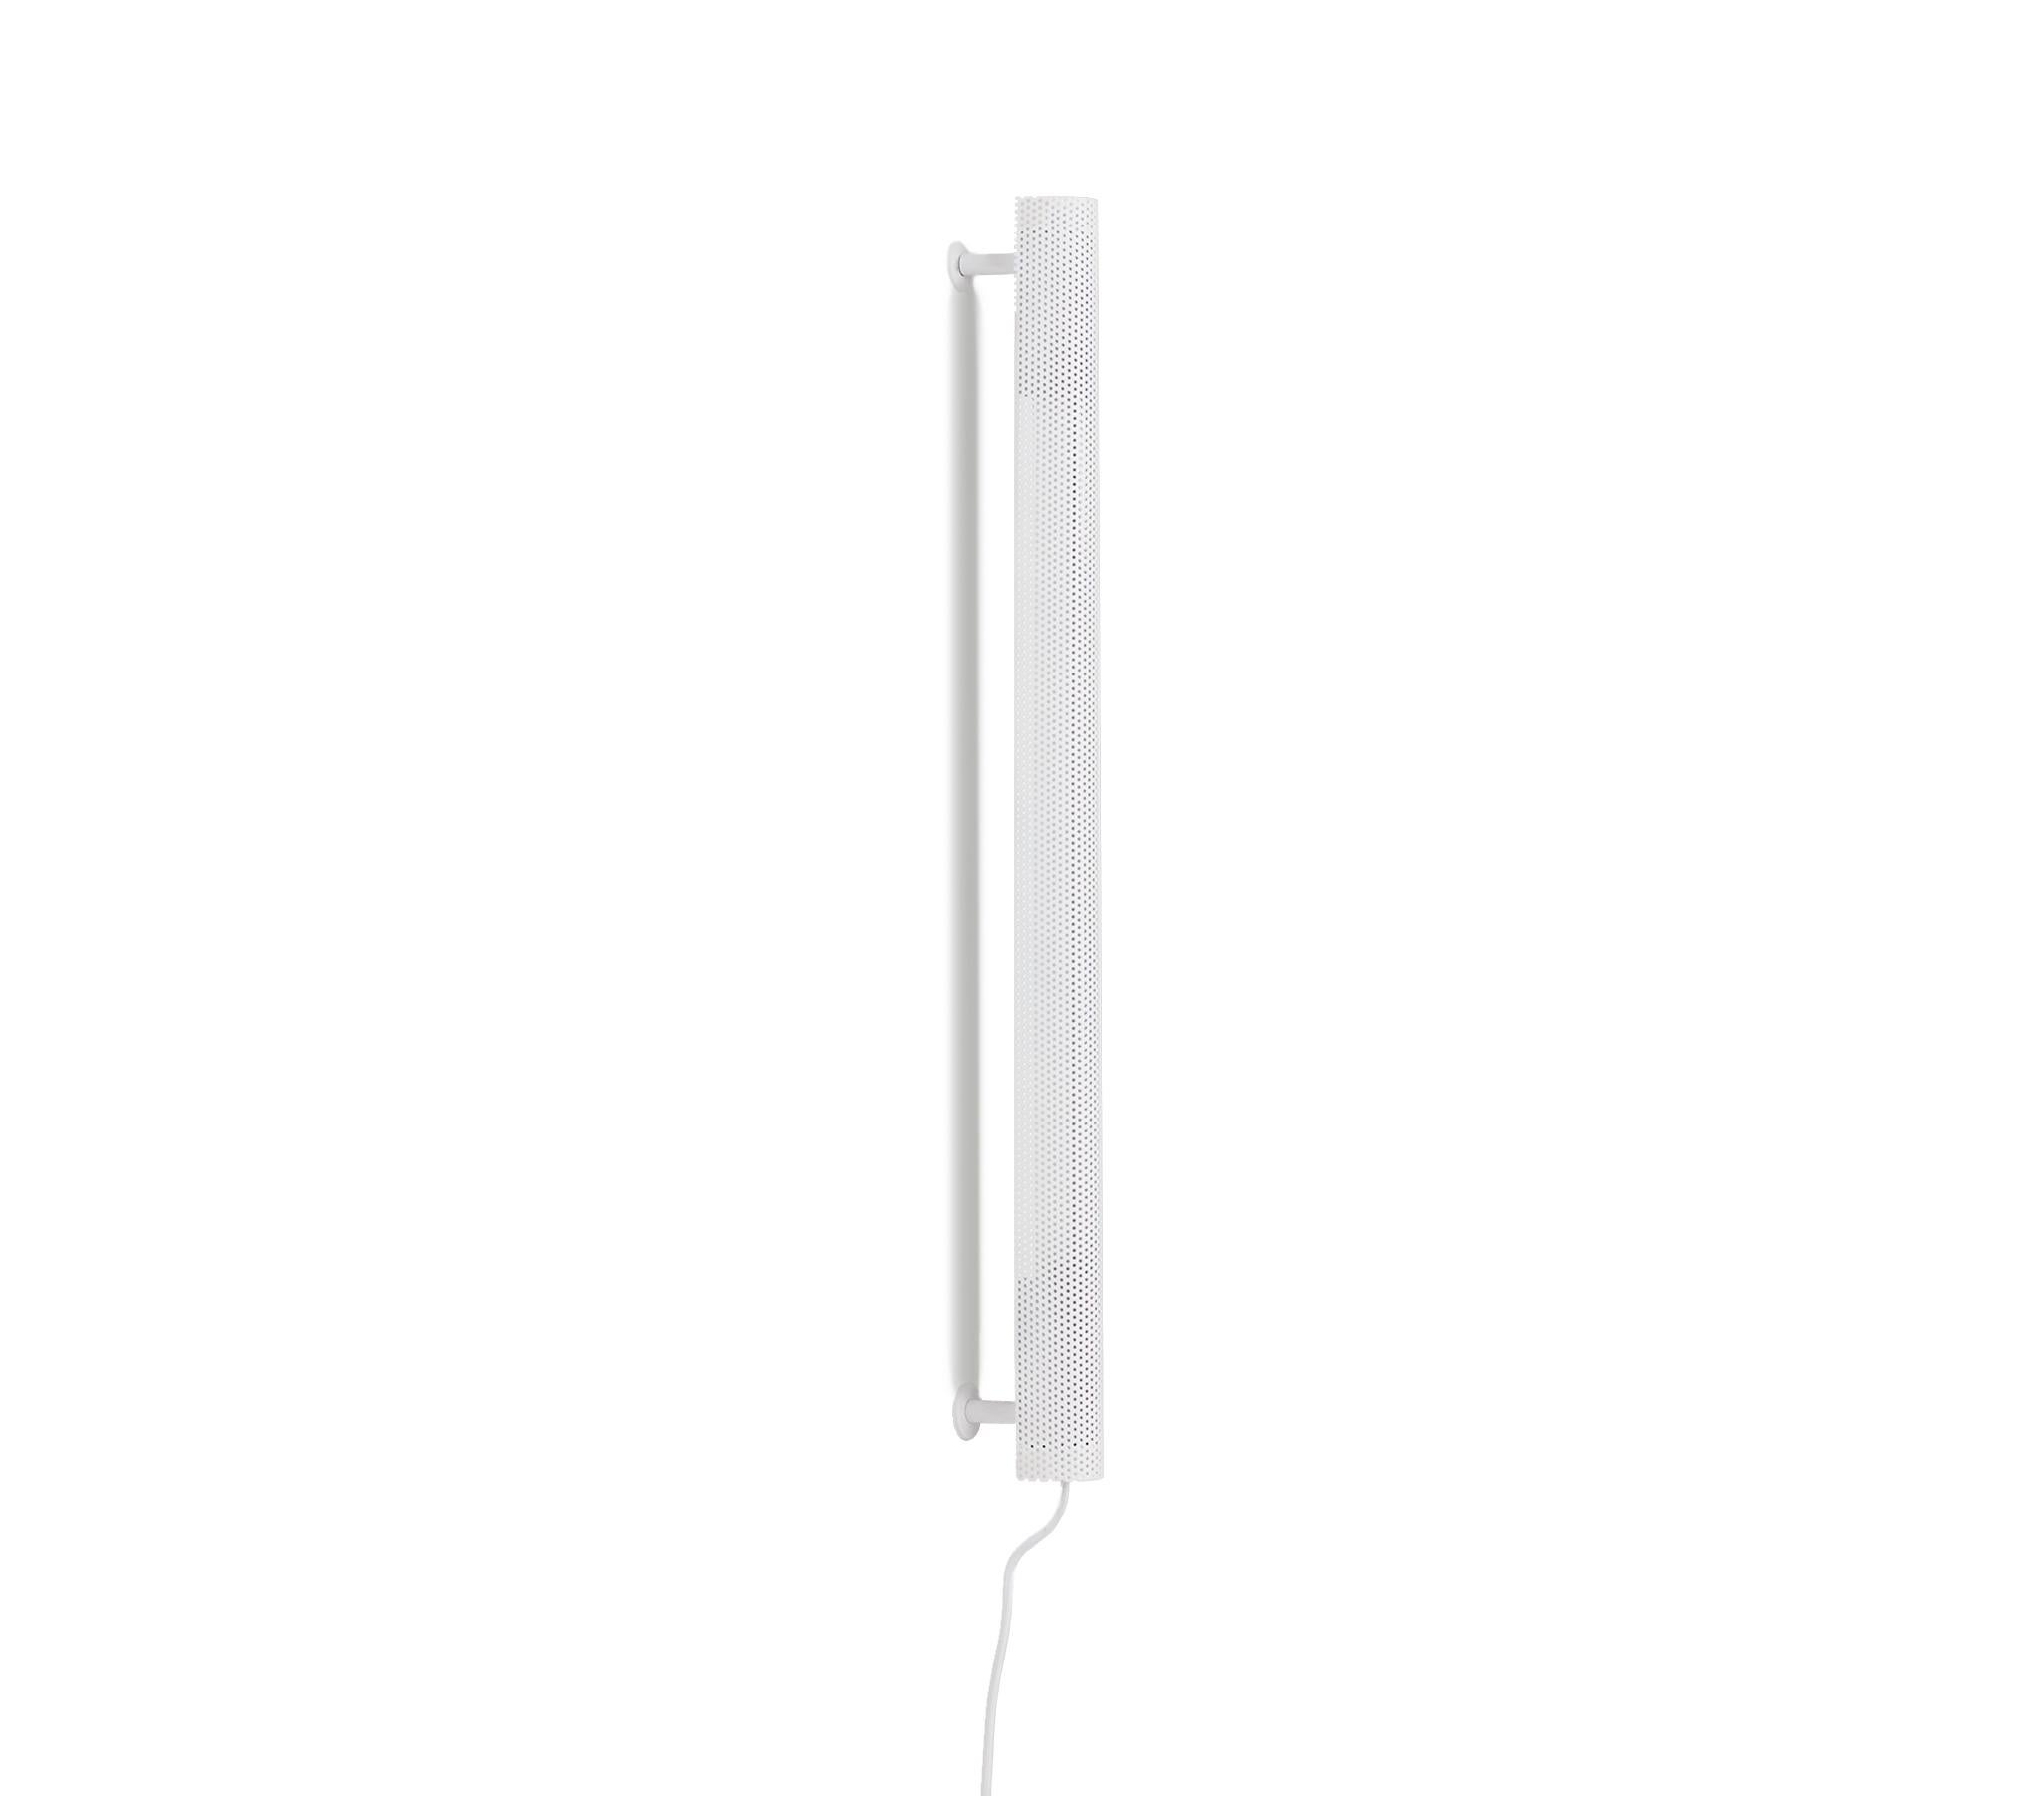 Radent Wall Lamp basiert auf einer Standard-LED-Leuchte und ist eine schlanke, strahlende, lineare Wandleuchte. Die Wandleuchte Radent ist in zwei Größen und in schwarzer, weißer oder messingfarbener Ausführung erhältlich.